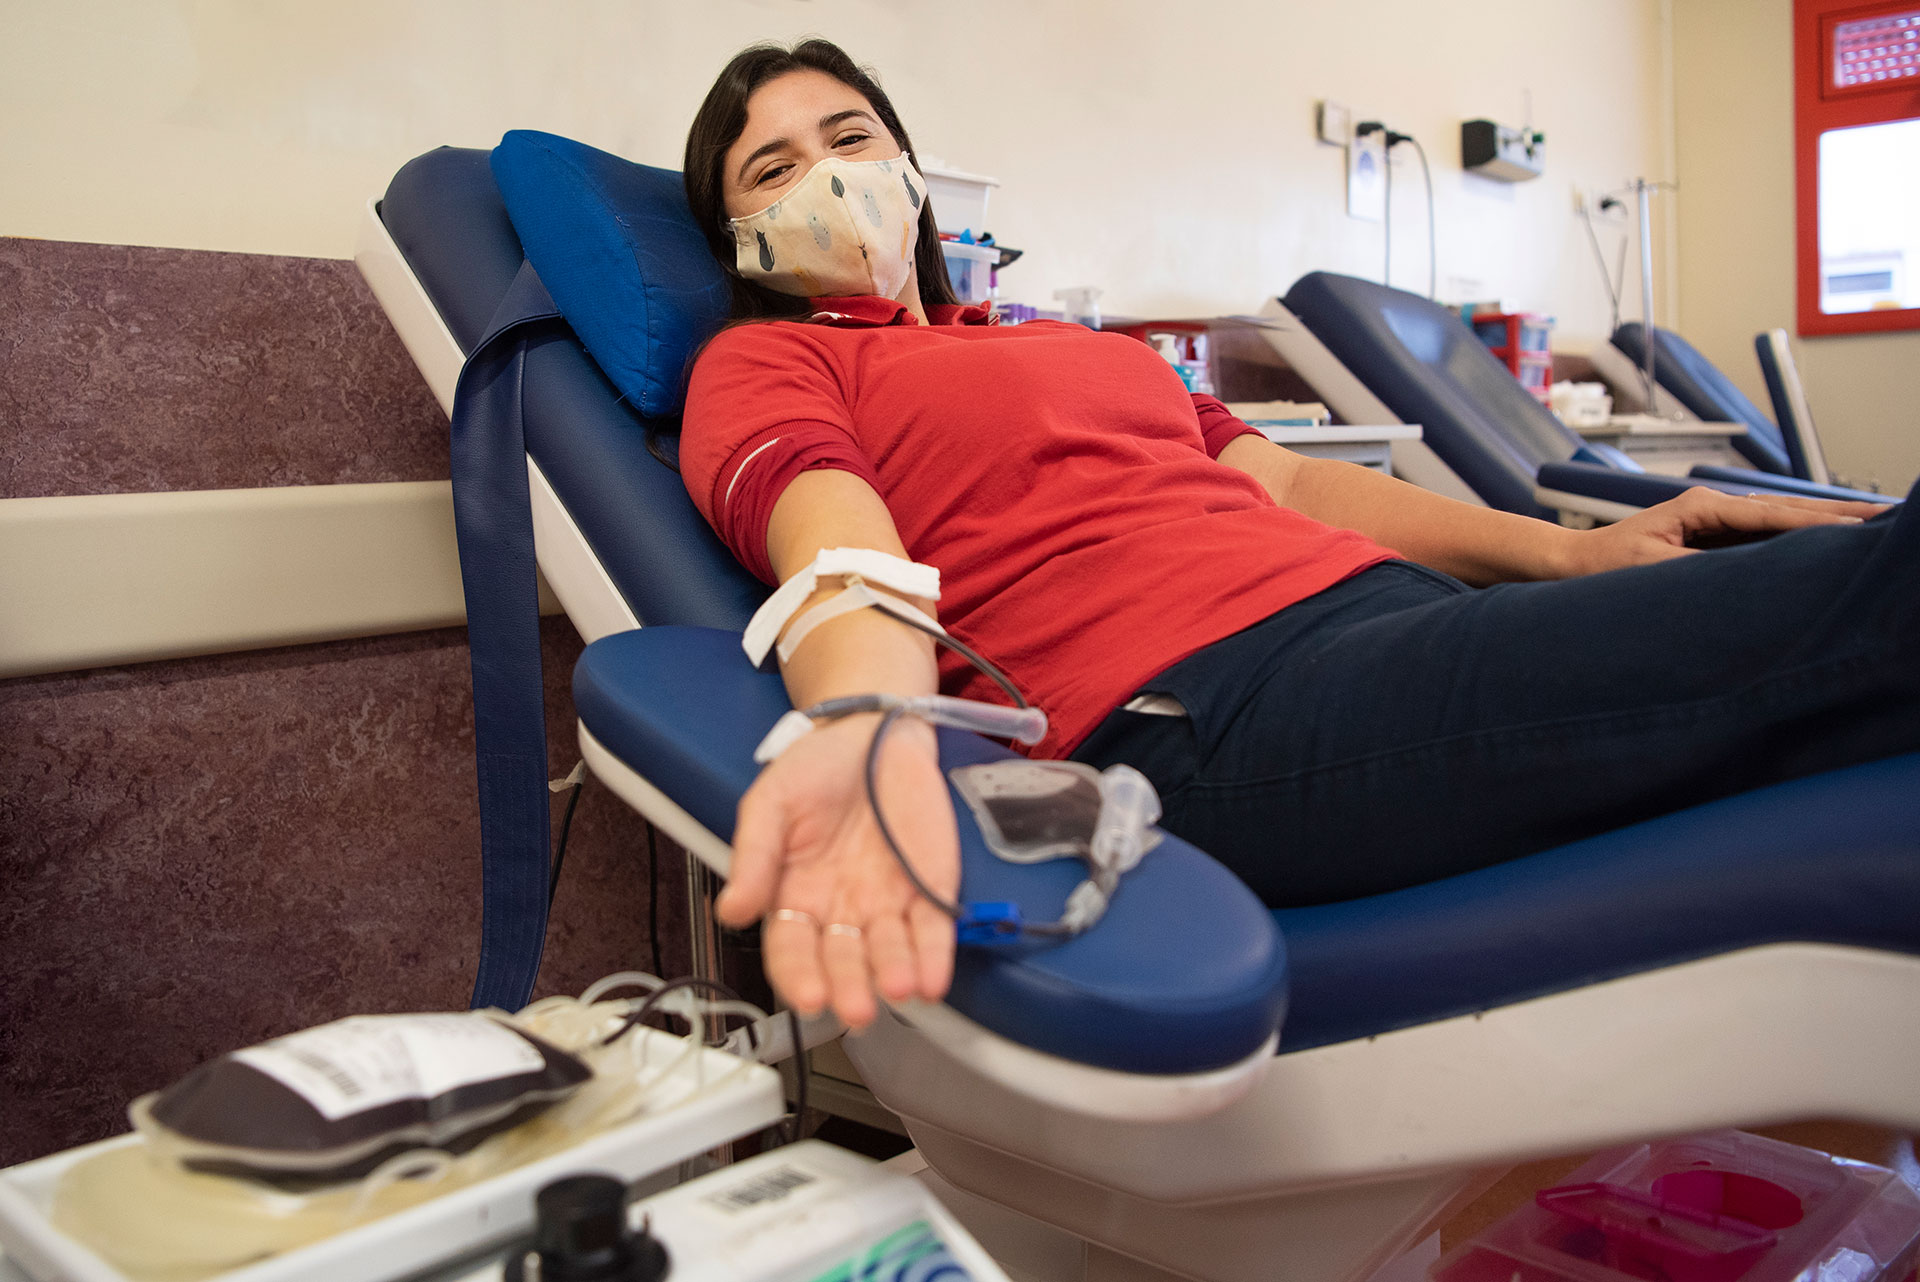 Abierto por vacaciones, es la campaña impulsada por el Hospital Garrahan que busca donantes de sangre durante el verano, momento en que las donaciones bajan abruptamente (Hospital Garrahan)